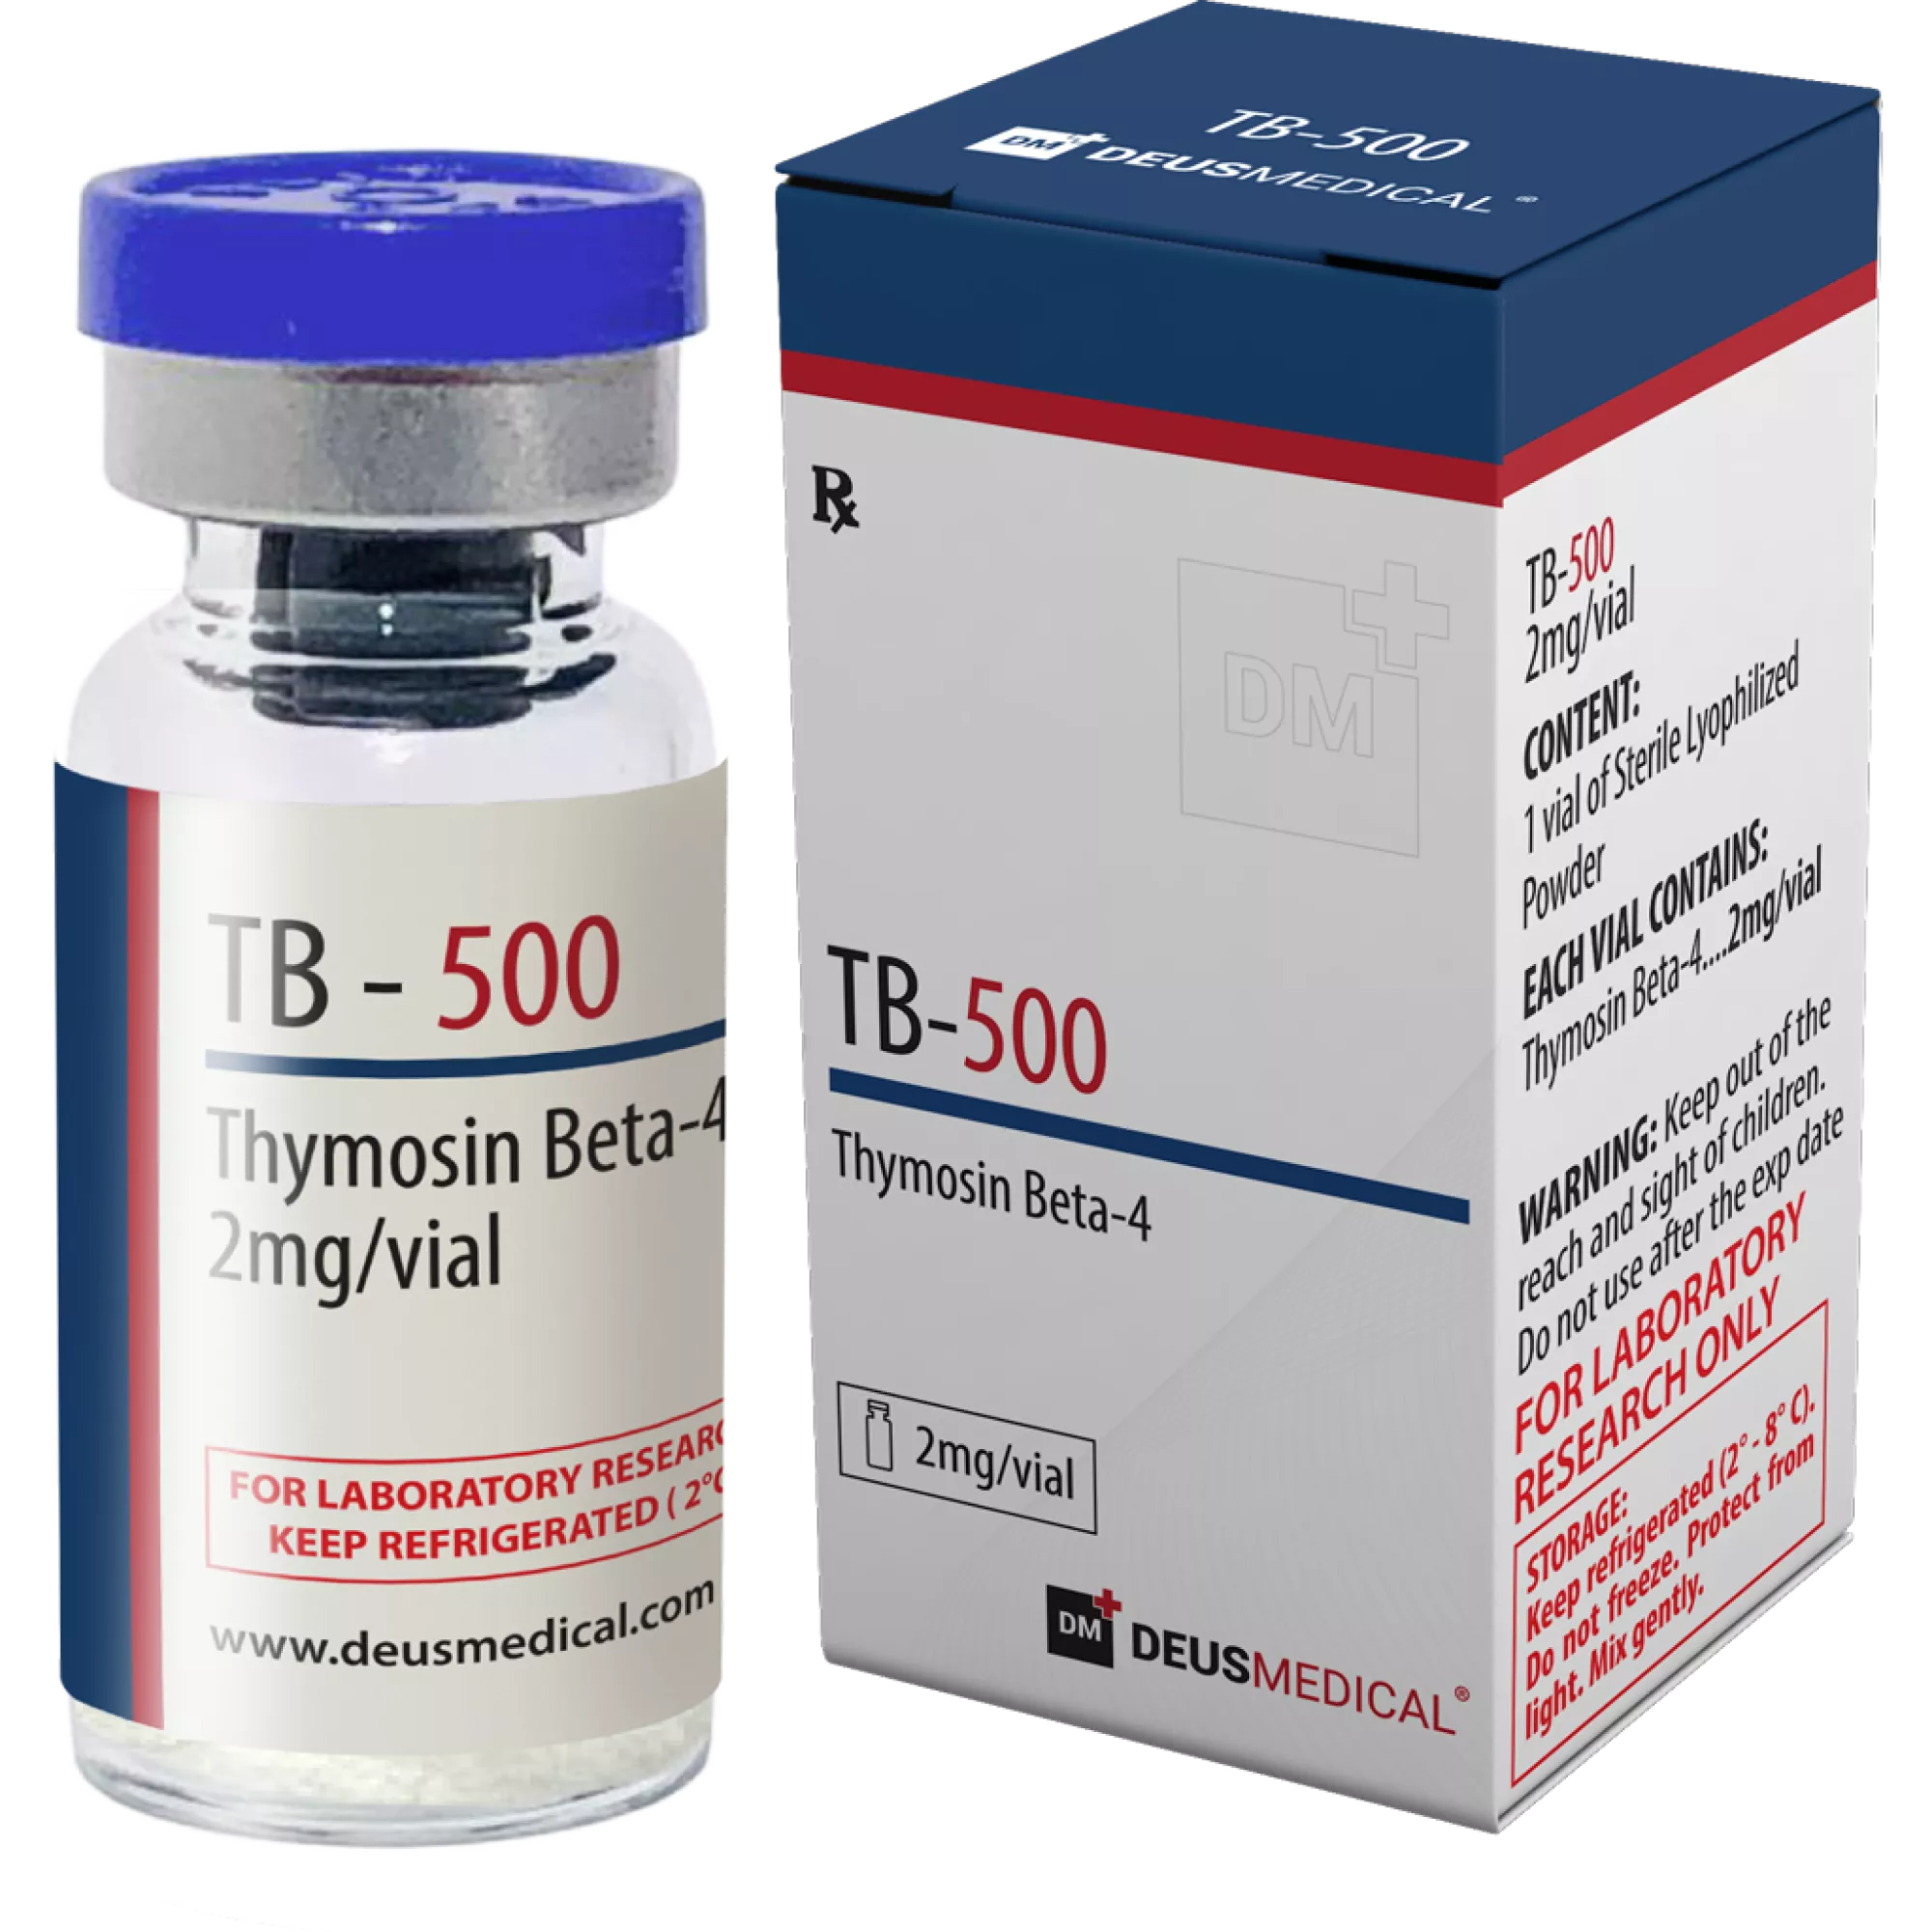 TB-500 (Thymosin Beta-4), Deus Medical, köp steroider online - www.deuspower.shop